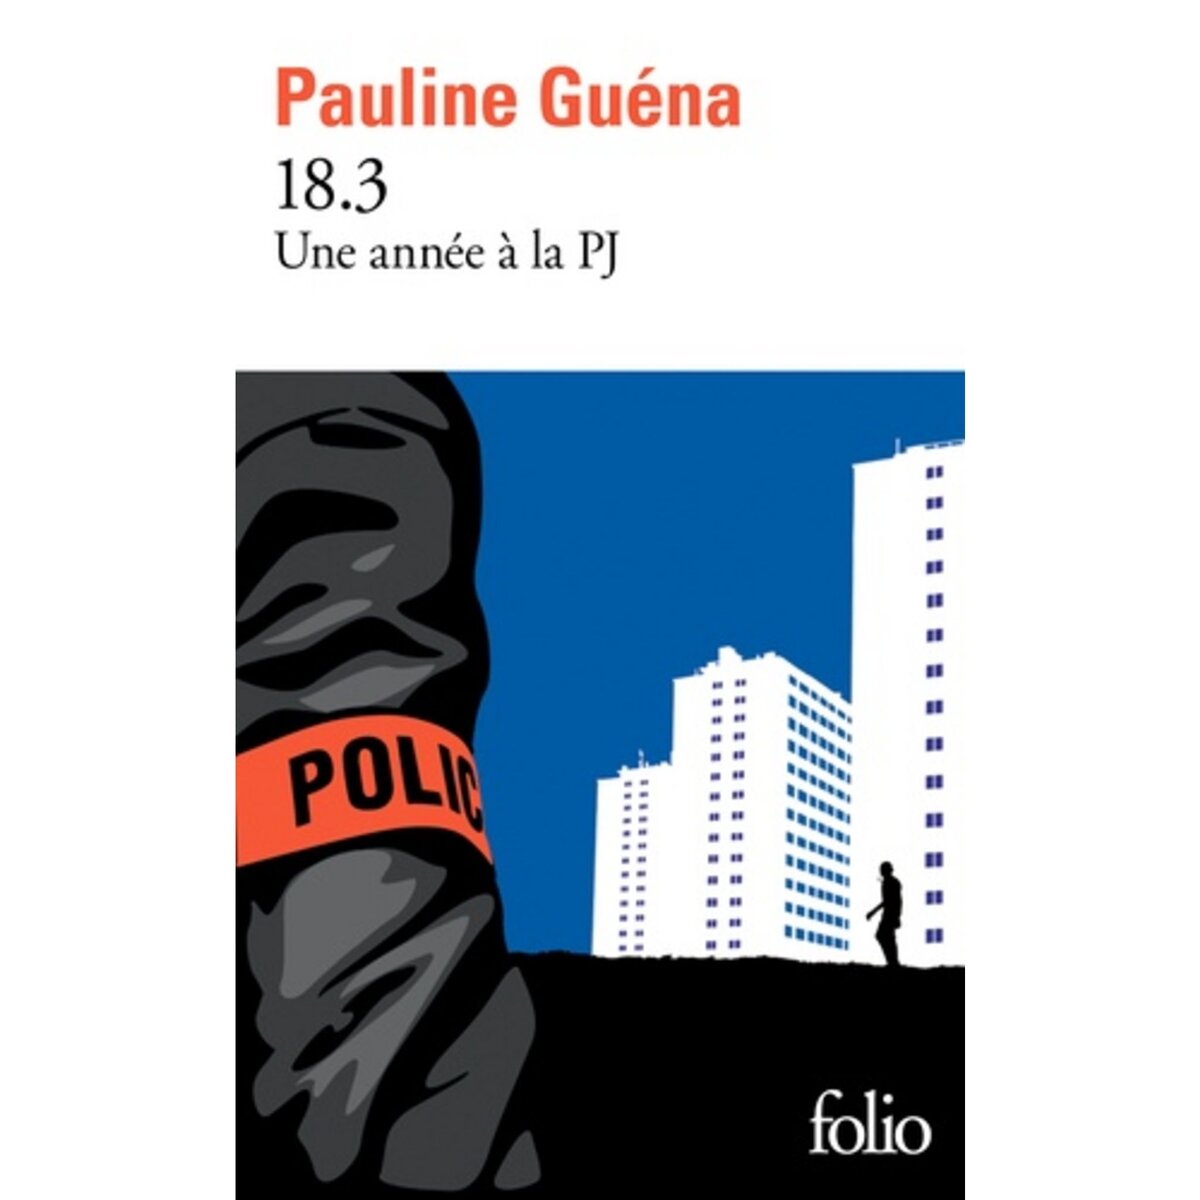  18.3. UNE ANNEE A LA PJ, Guéna Pauline